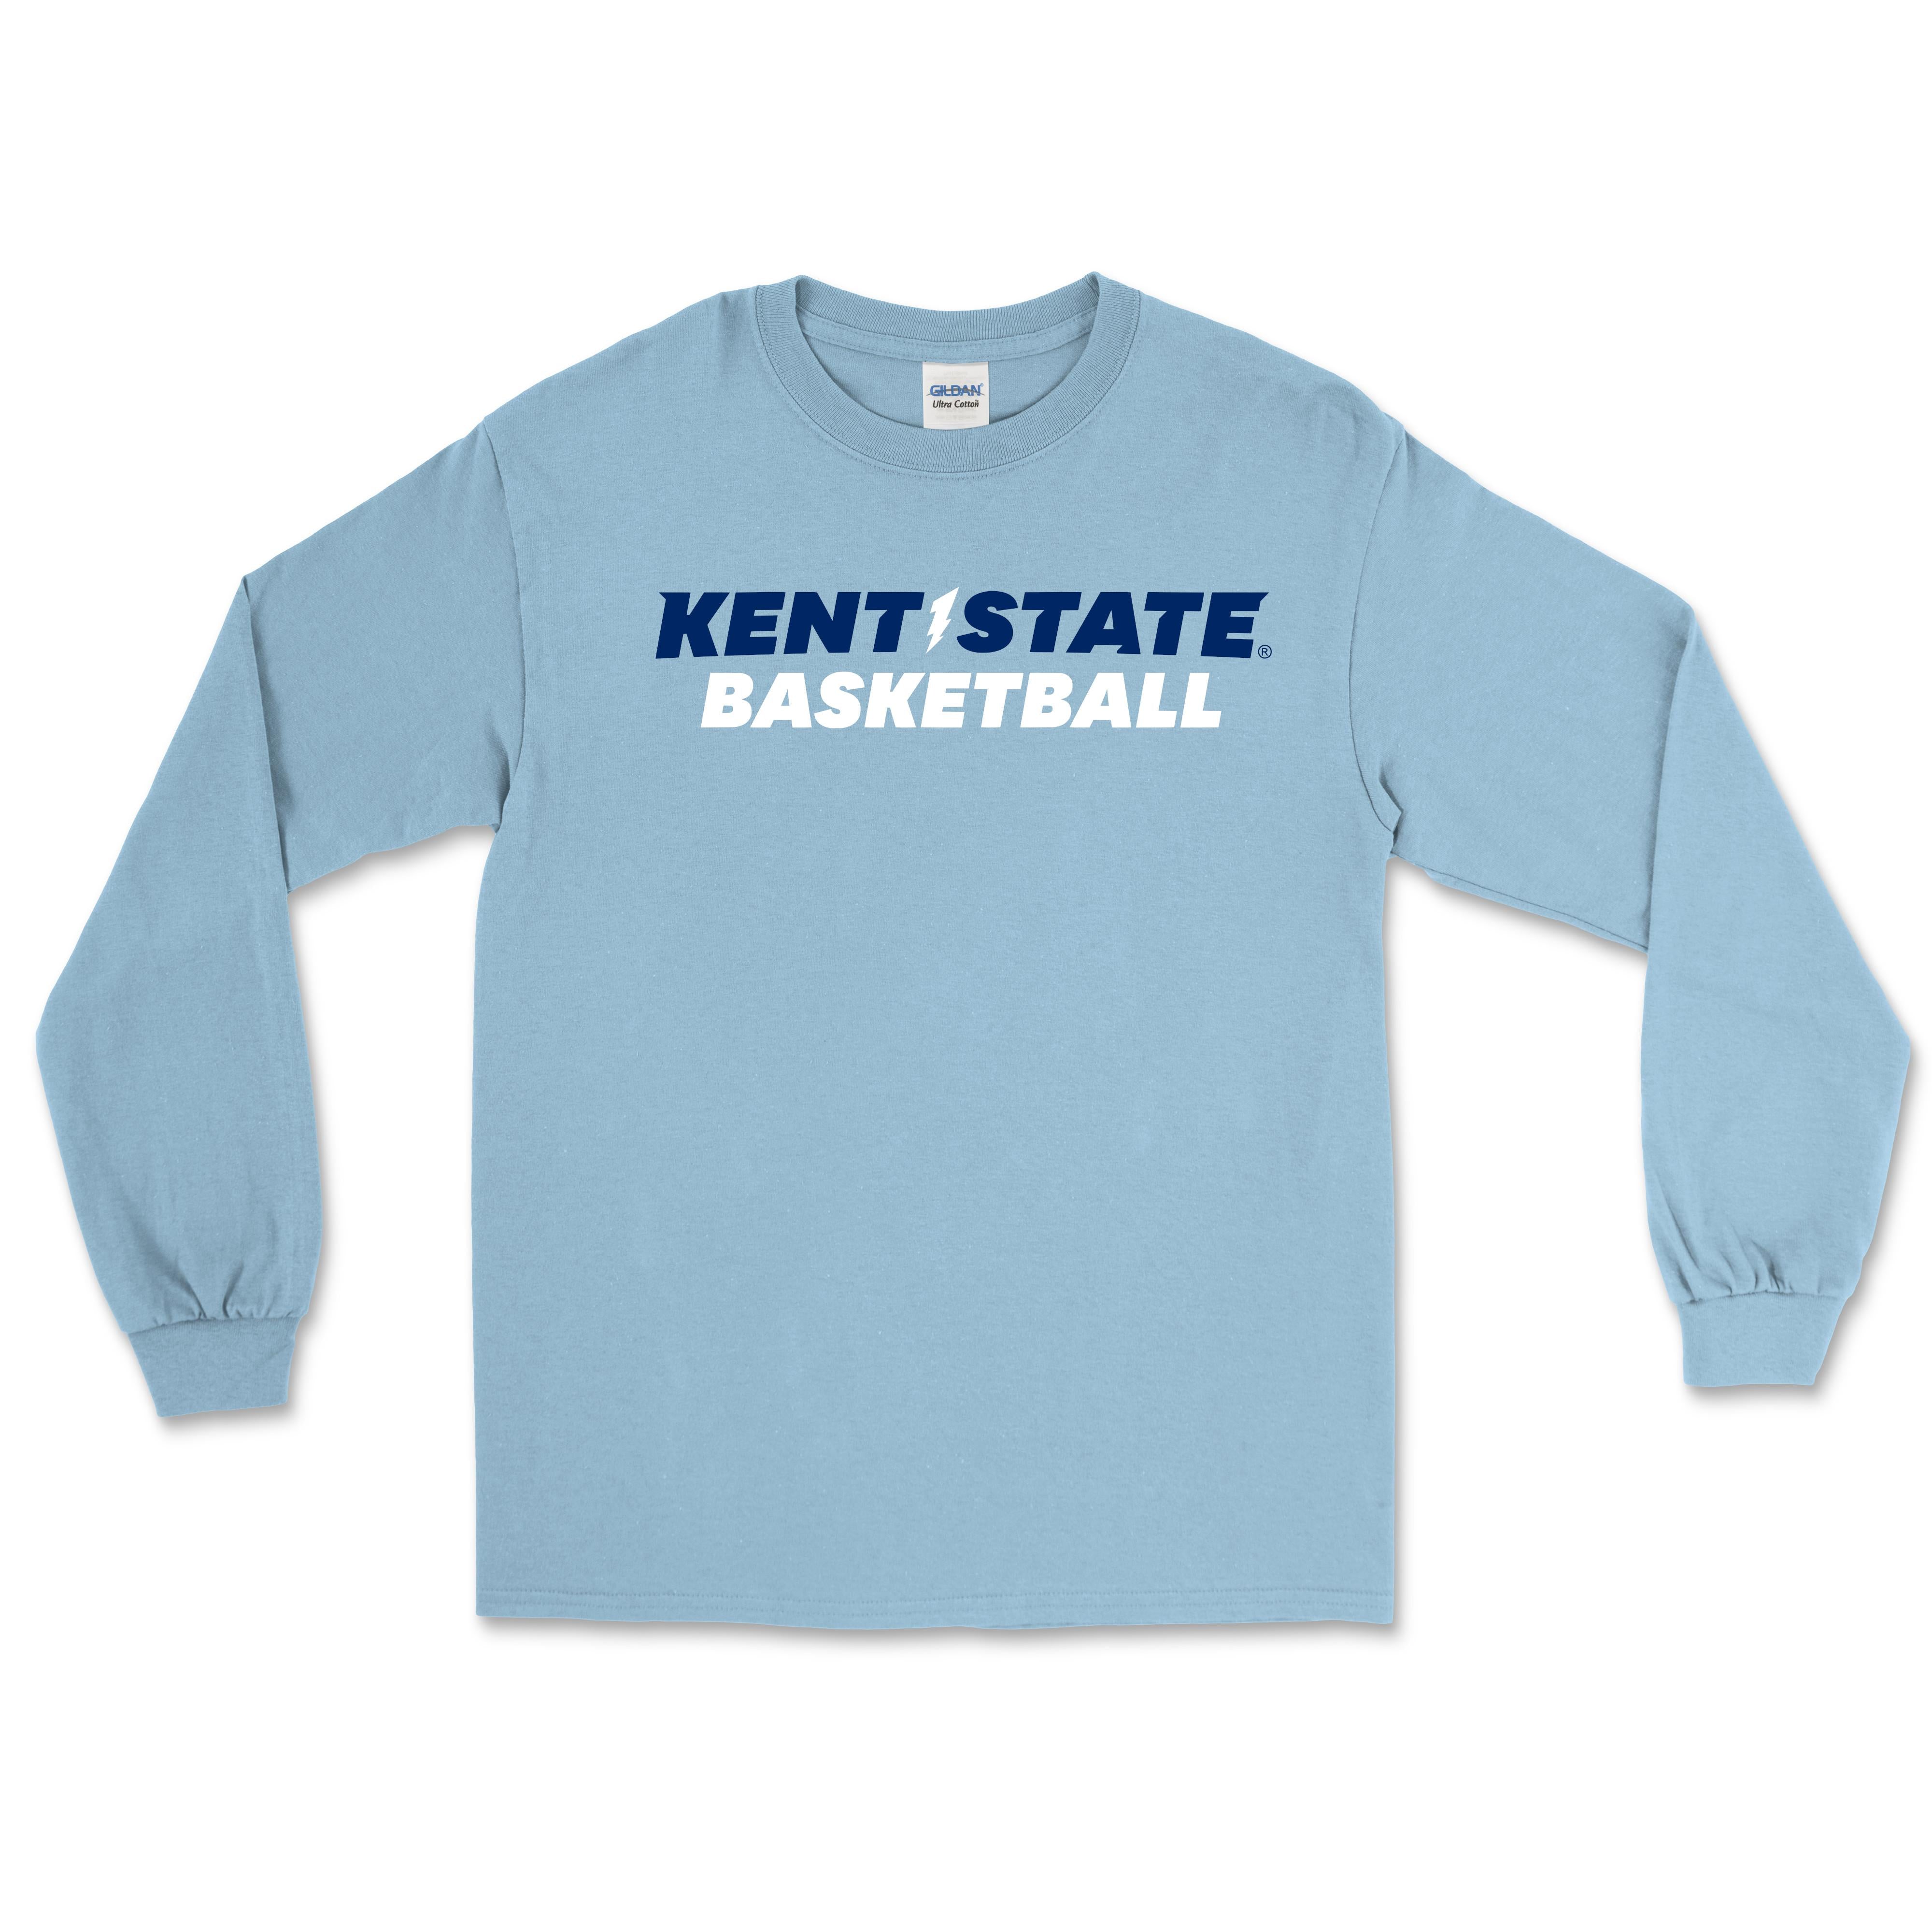 Kent State Light Blue Basketball Long Sleeve T-Shirt